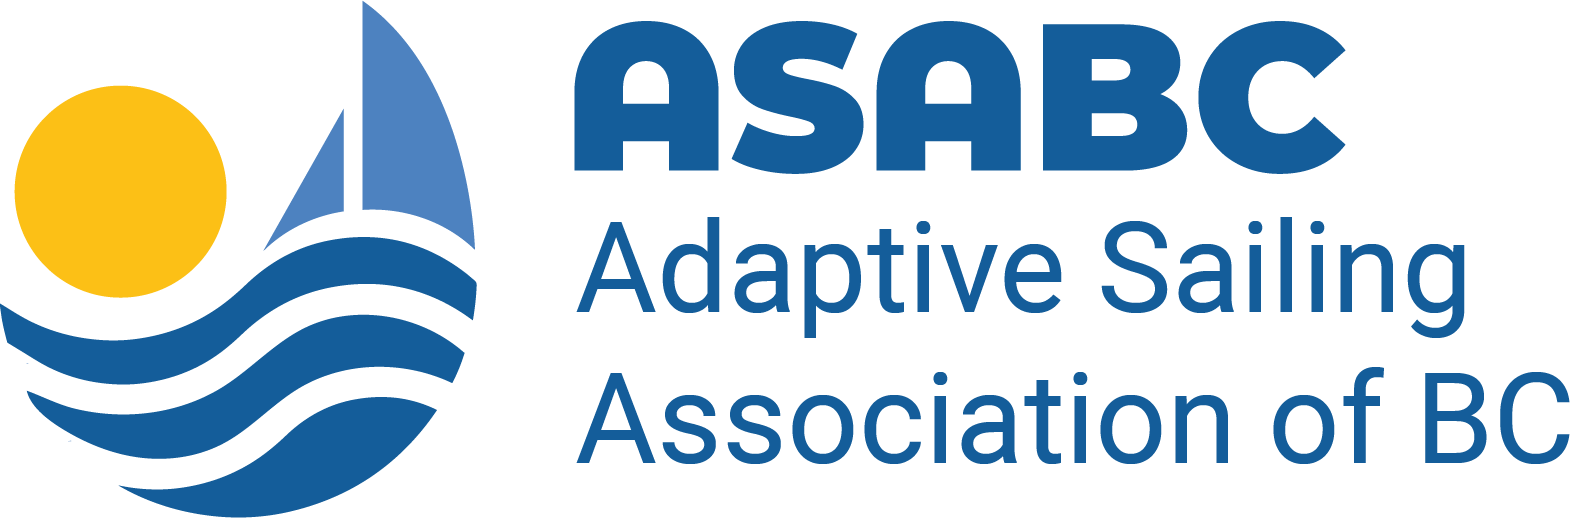 Adaptive Sailing Association of BC (ASABC).